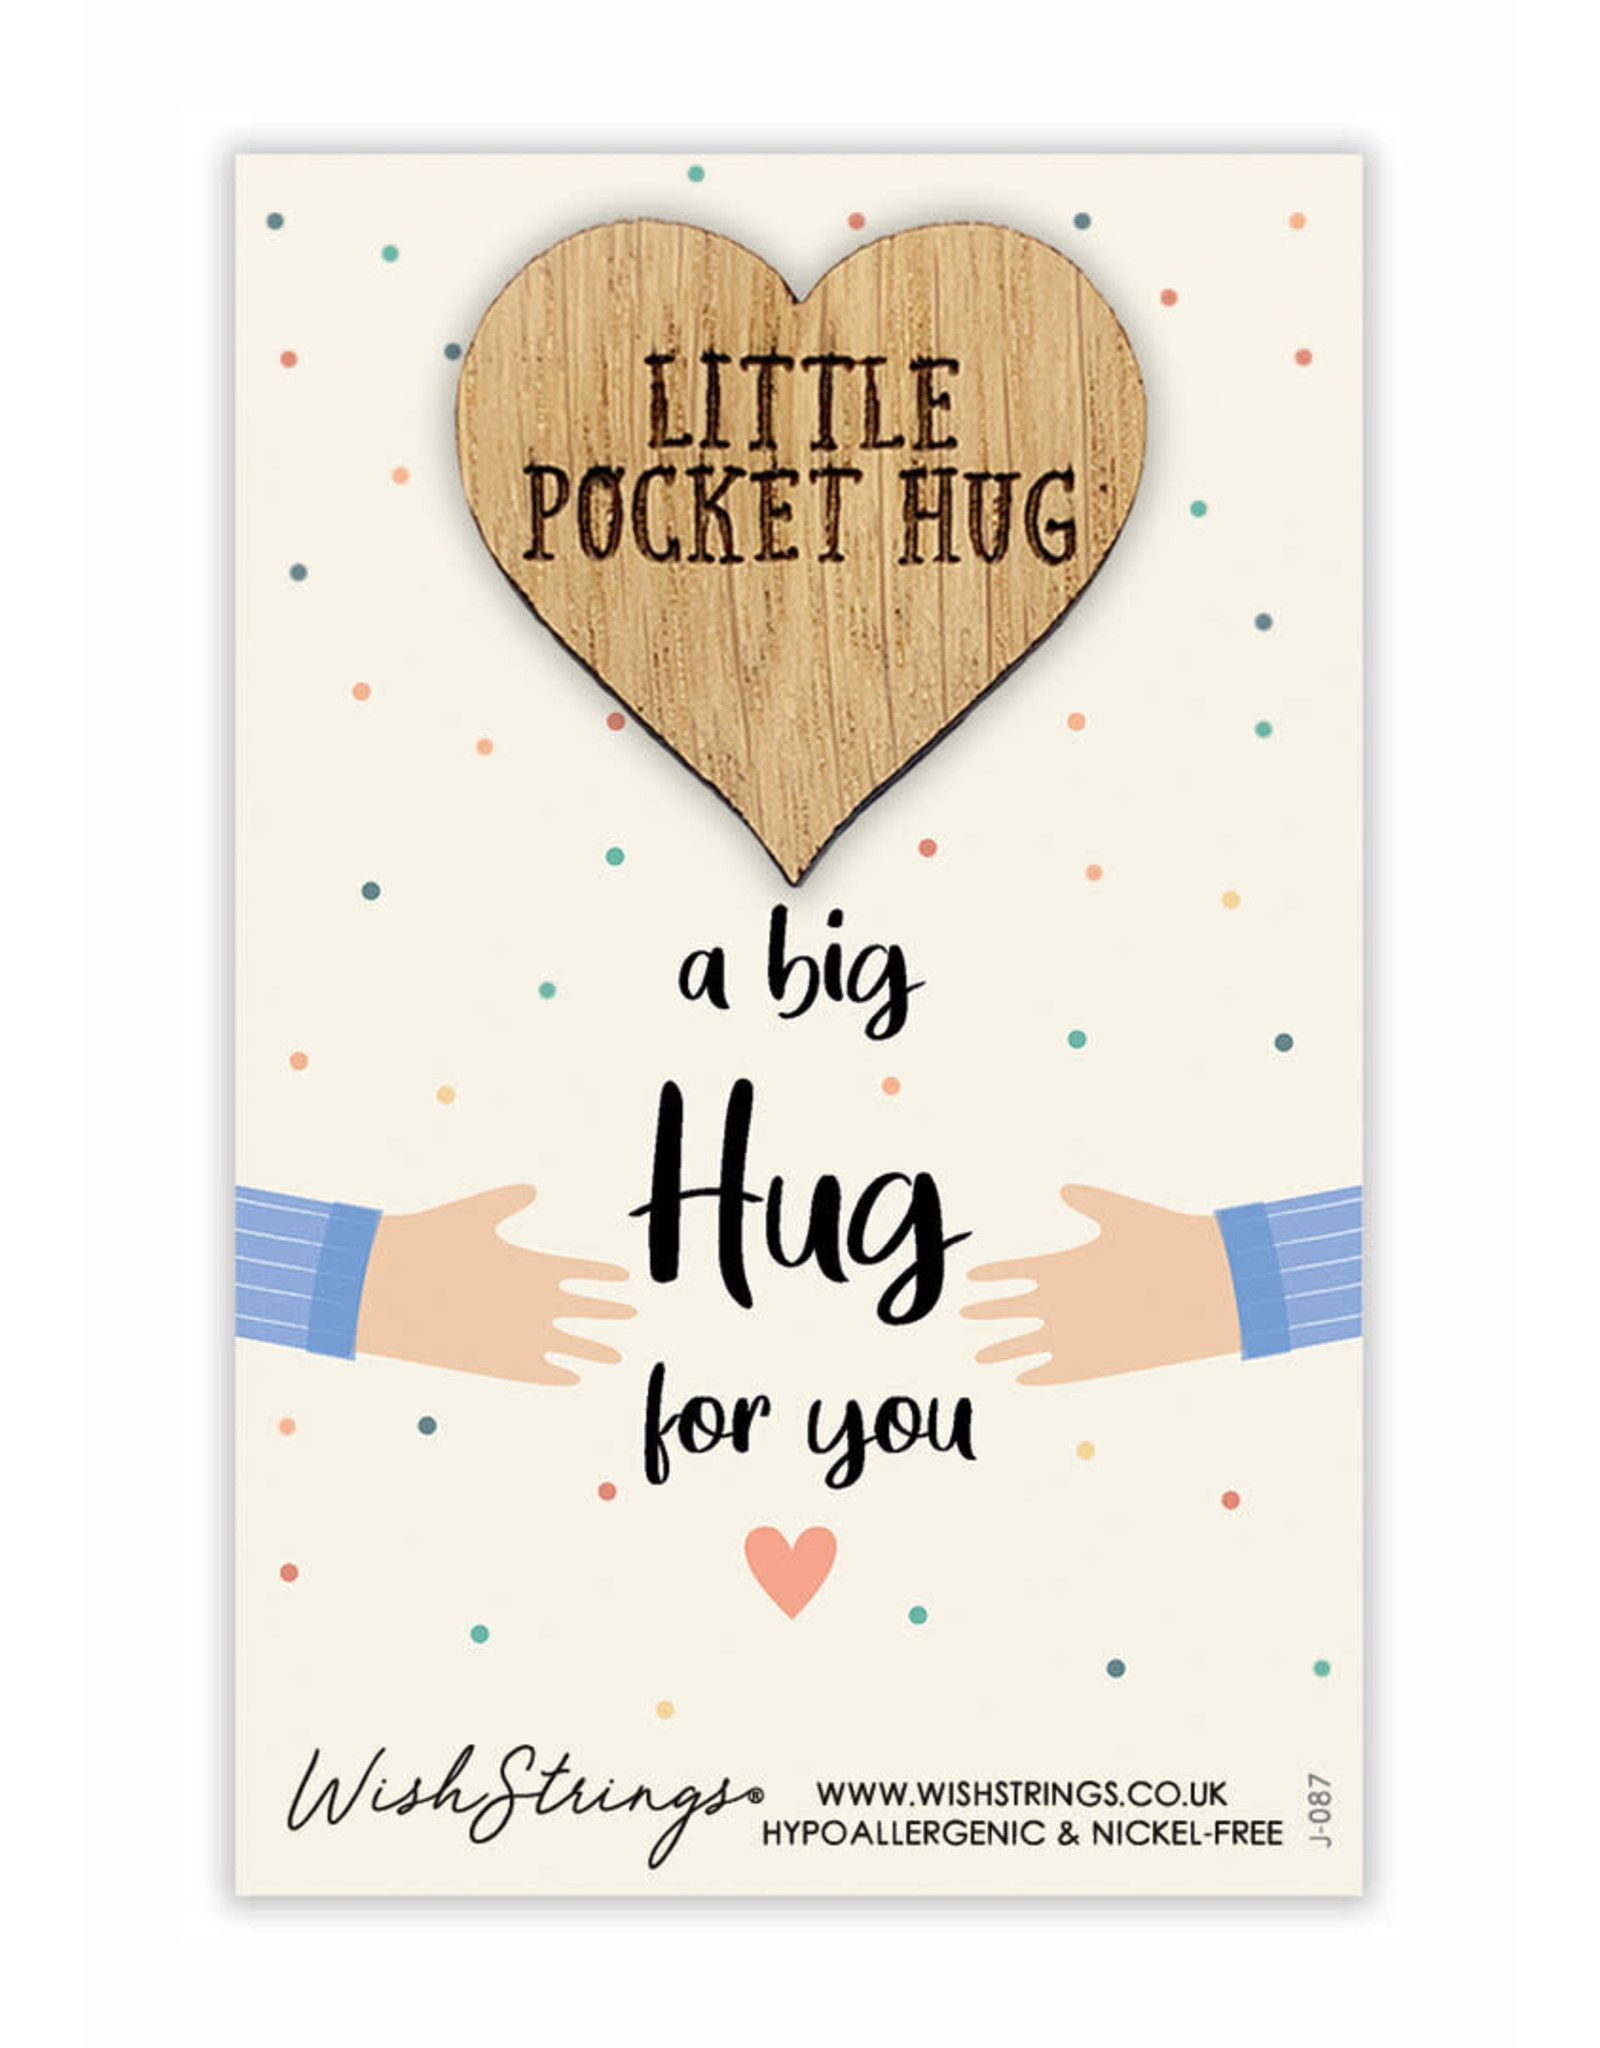 Little Pocket Hug “A big hug for you”